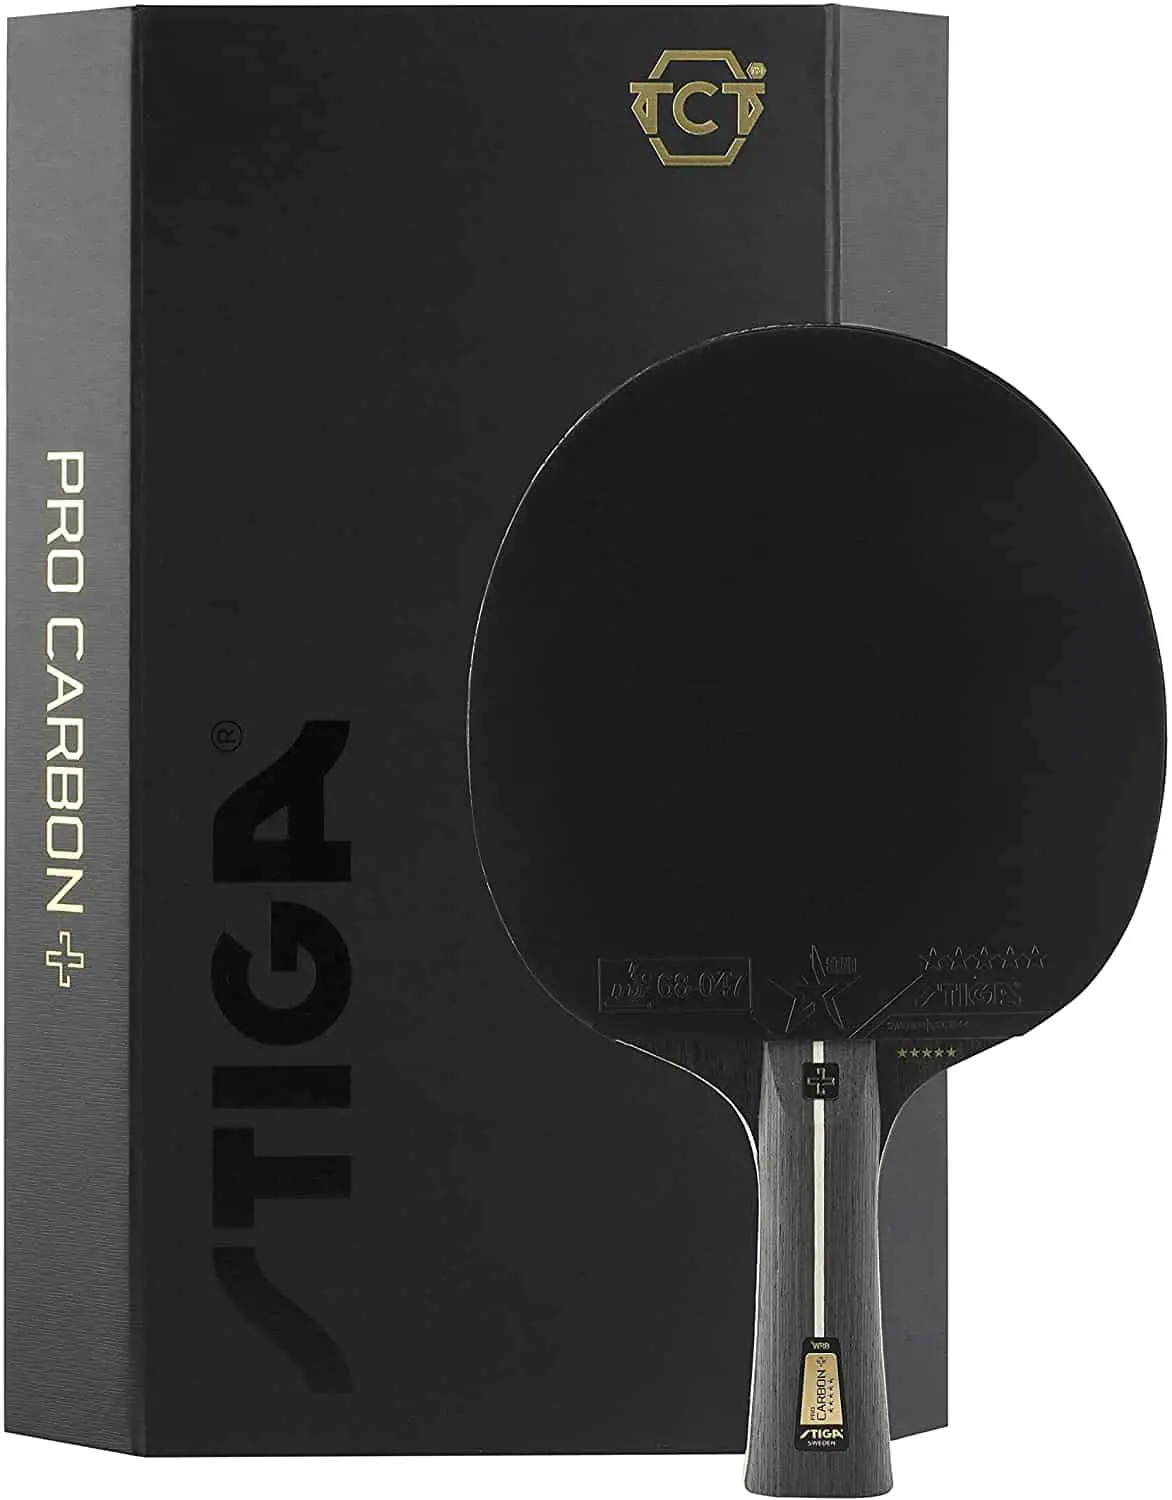 ไม้ปิงปองที่สมดุลที่สุด: Stiga Pro Carbon +